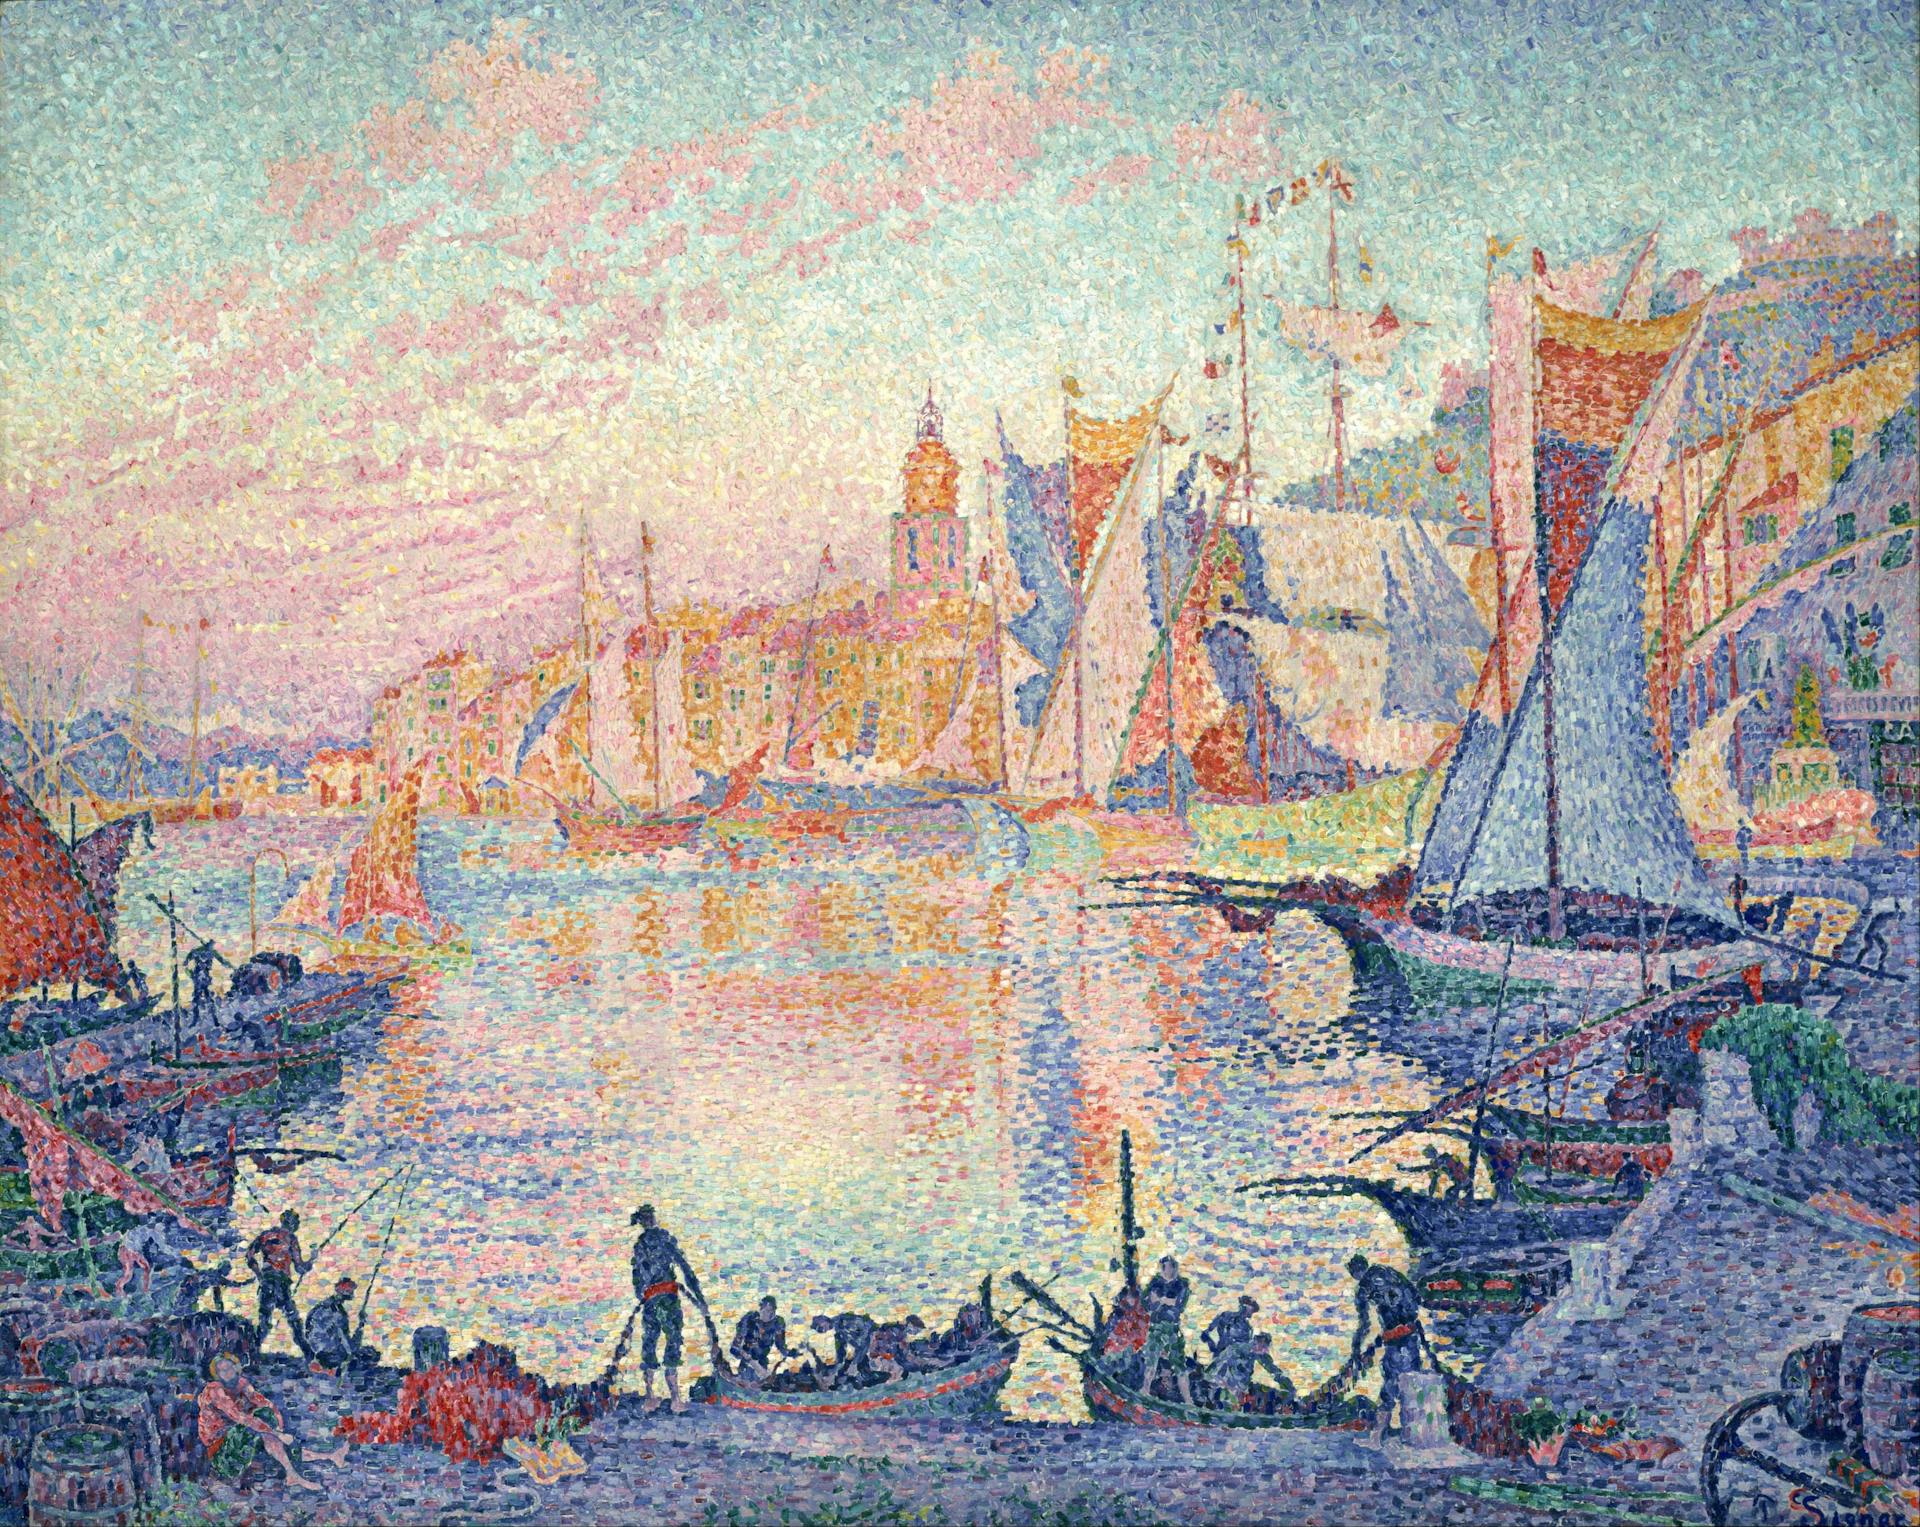 The Port of Saint-Tropez, Paul Signac, 1901 - 1902